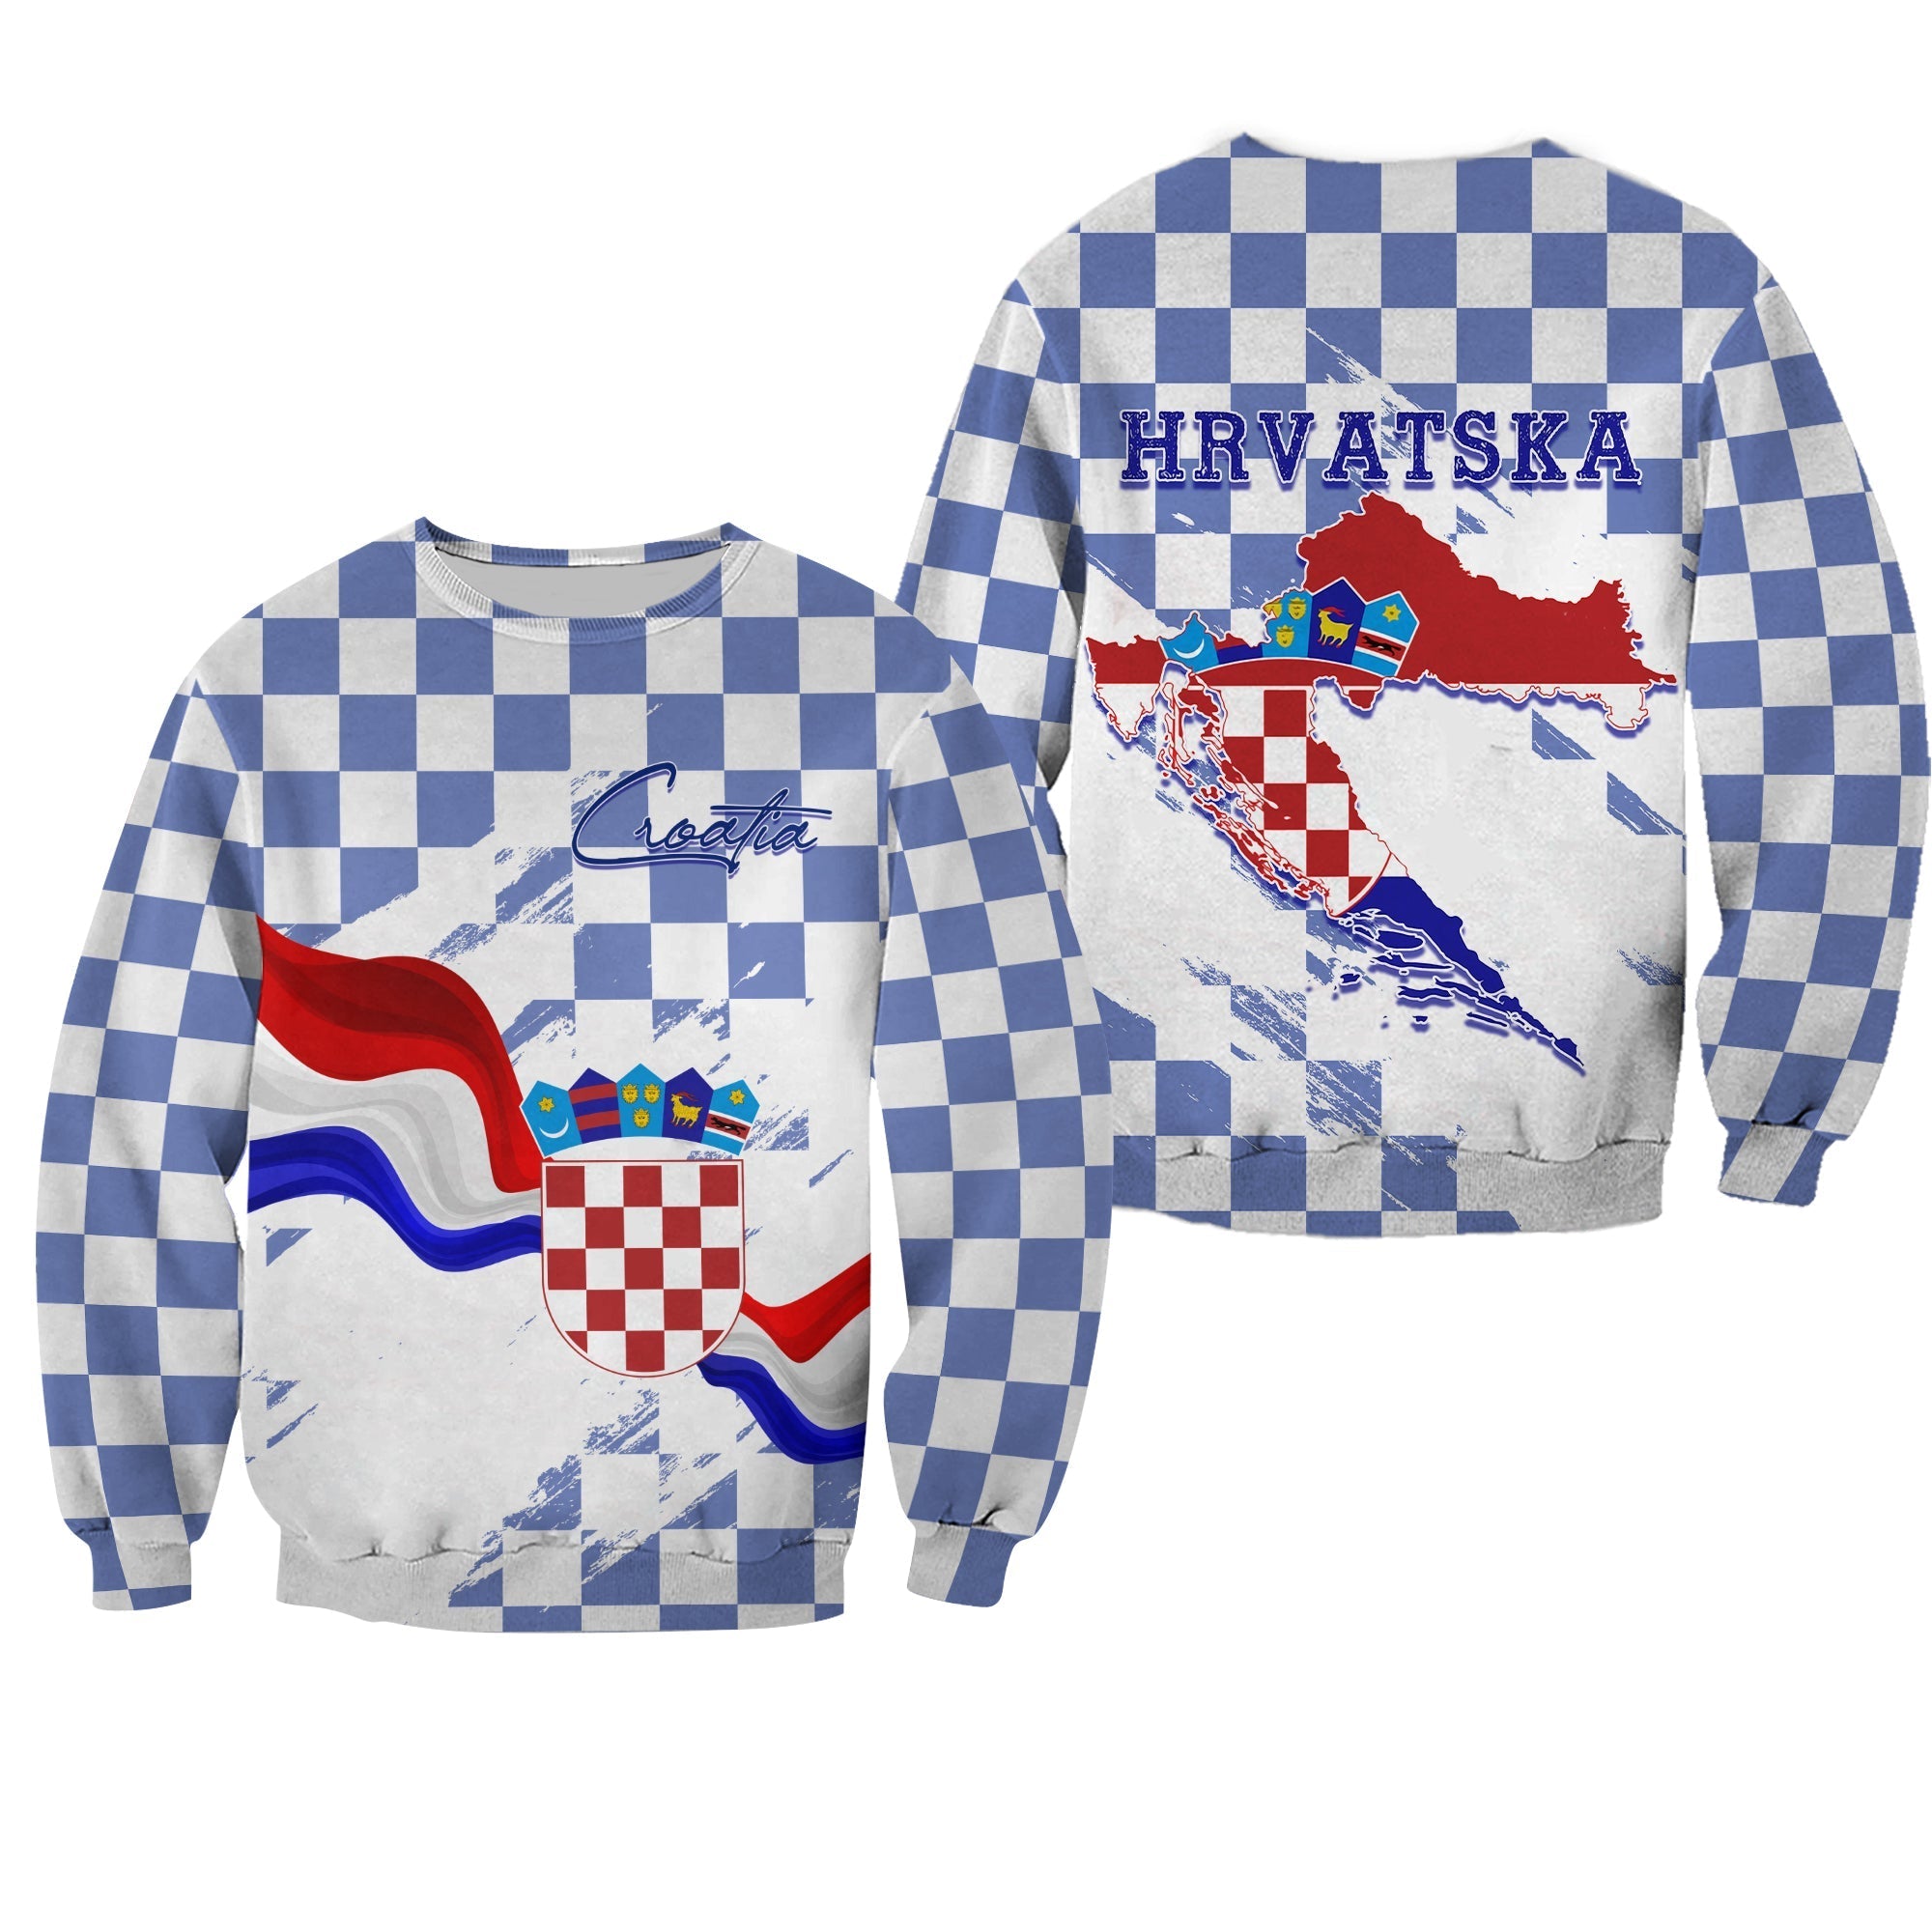 croatia-sweatshirt-checkerboard-grunge-style-blue-color